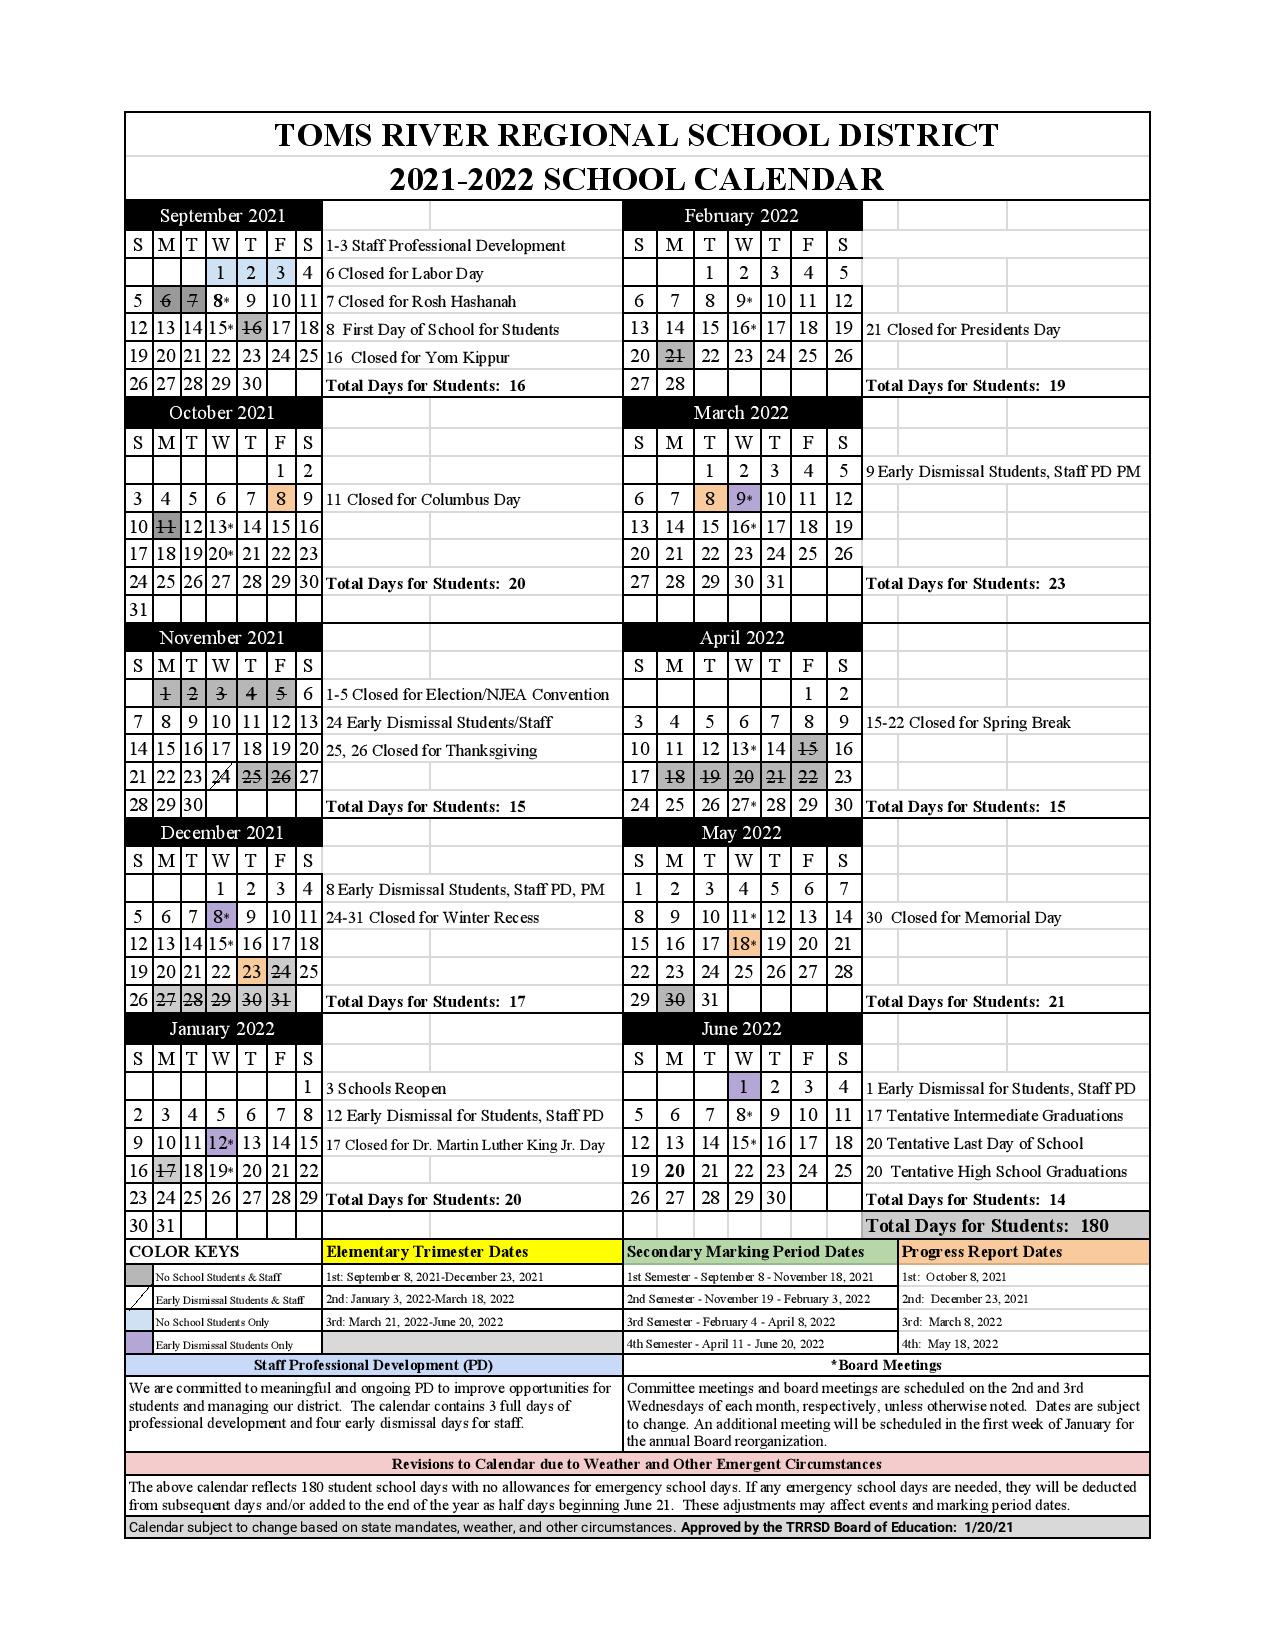 Toms River Regional Schools 20222023 Calendar July 2022